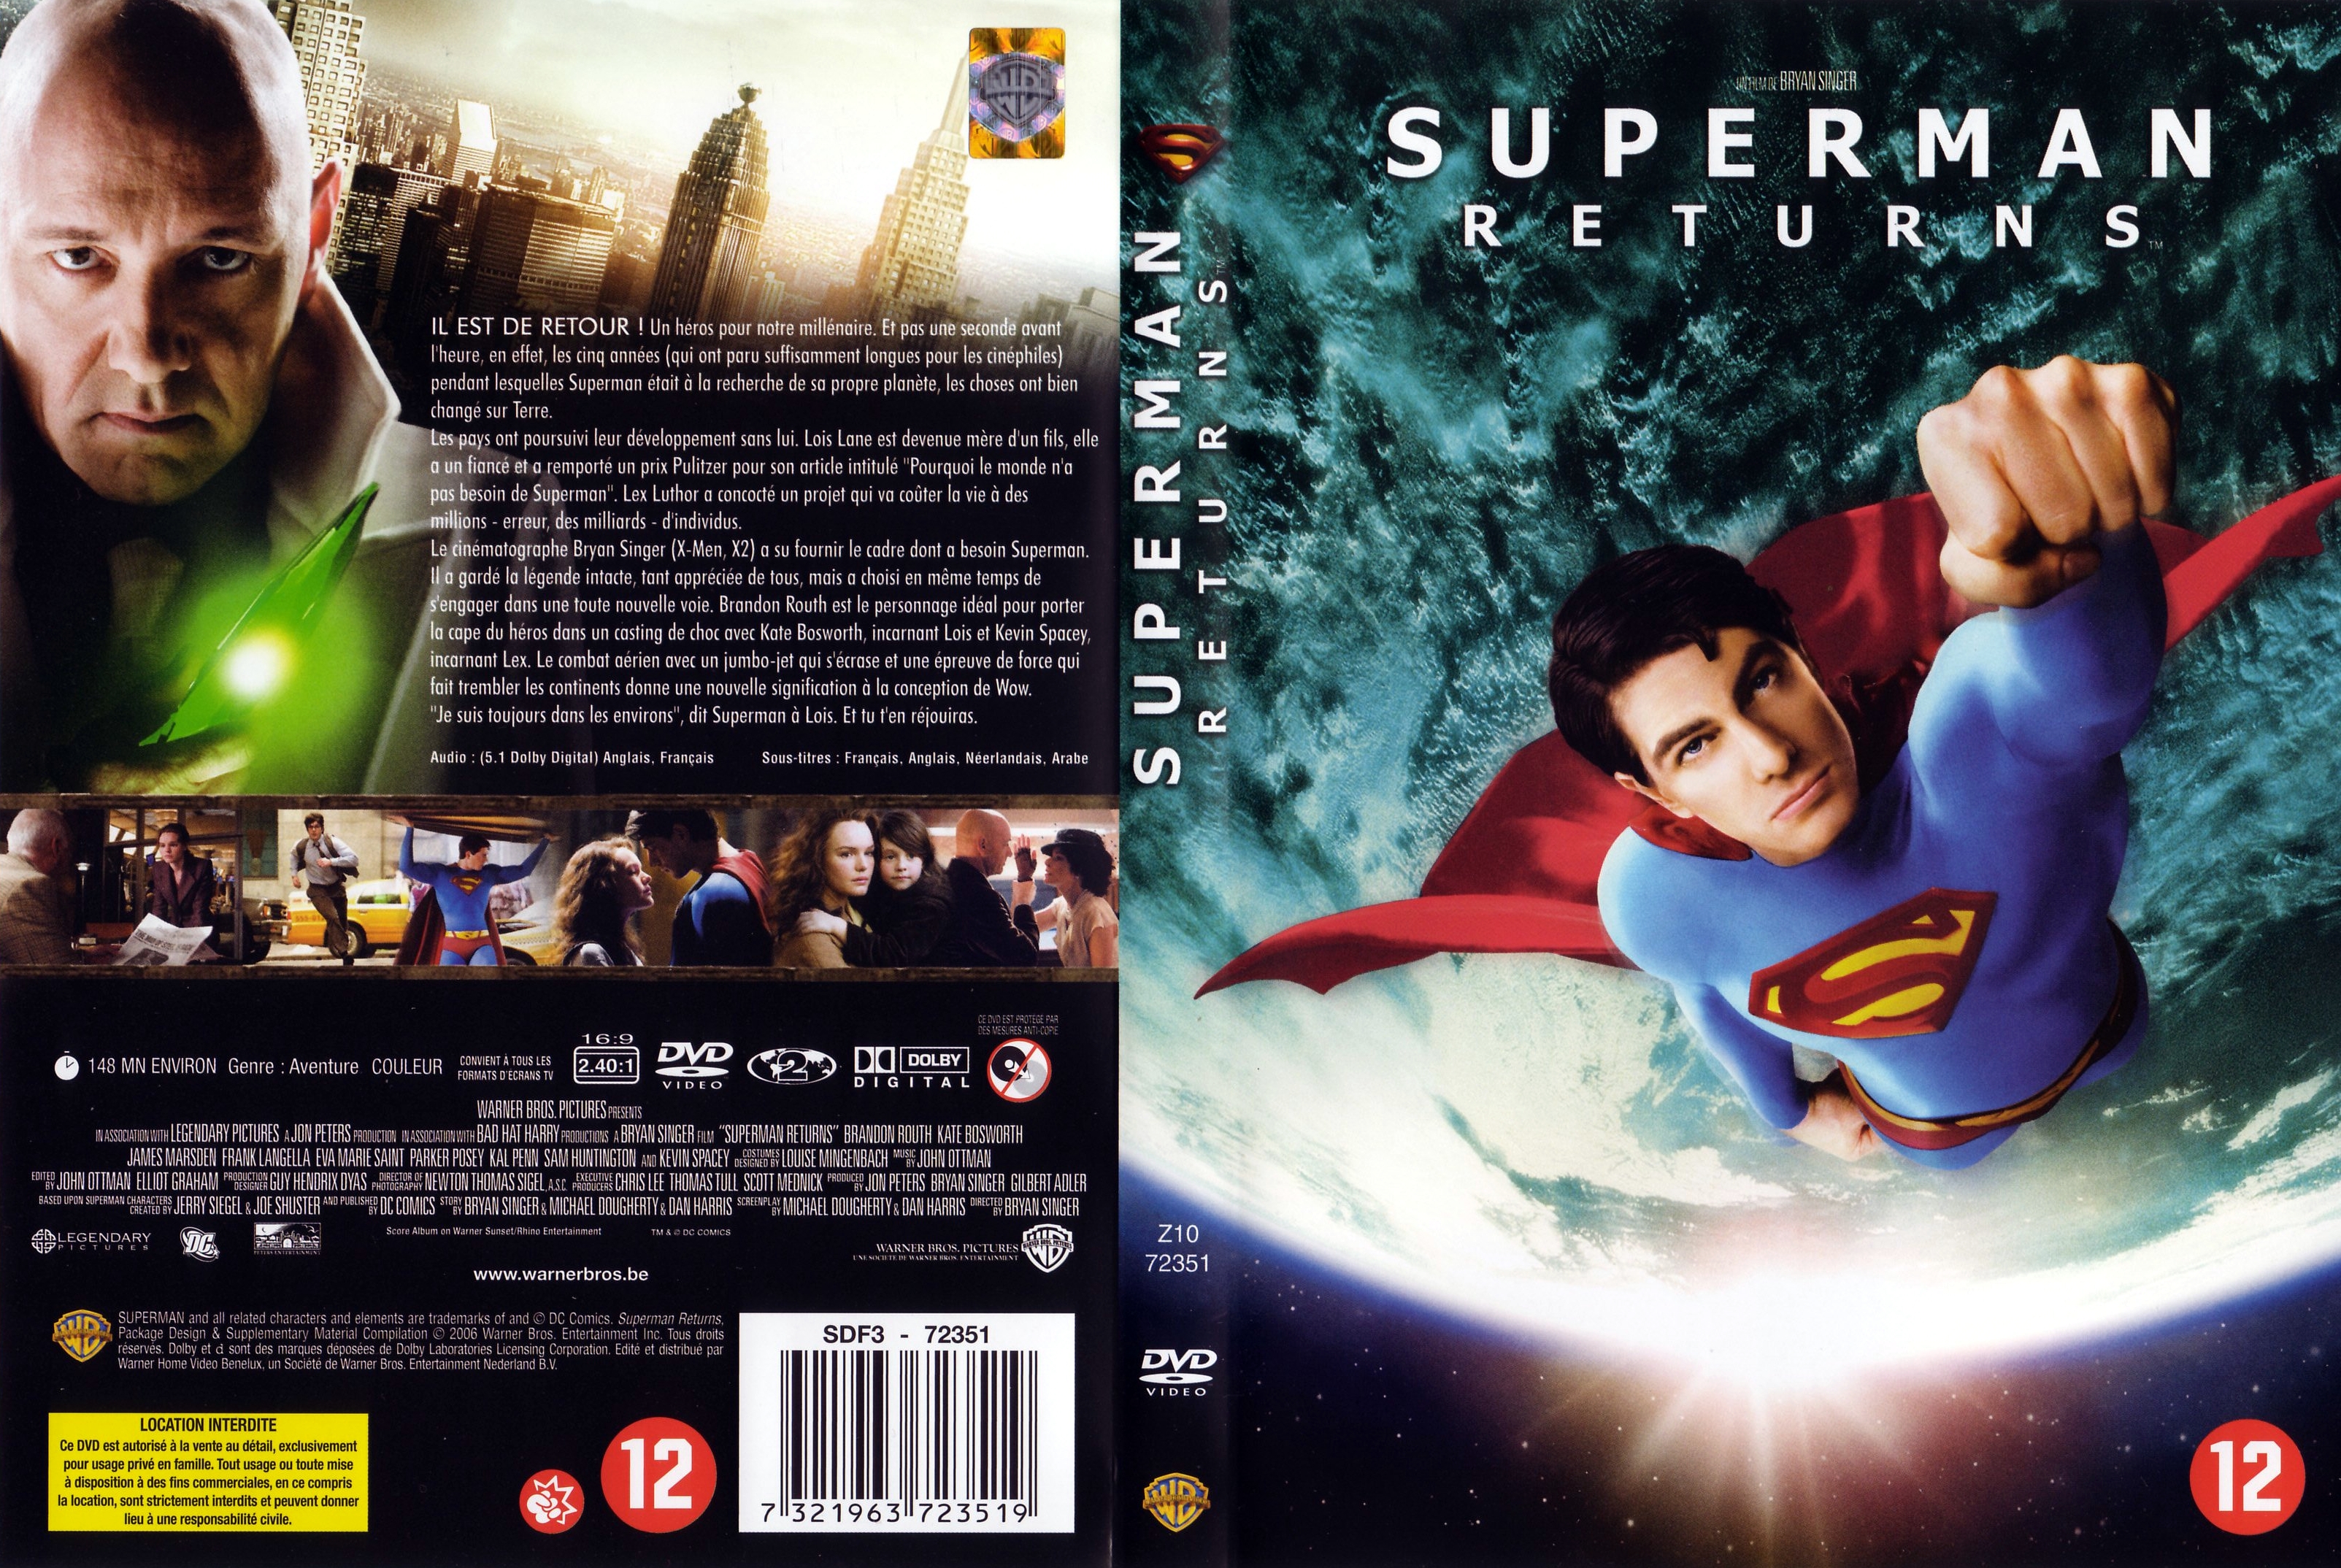 Jaquette DVD de Superman returns v2 Cinéma Passion